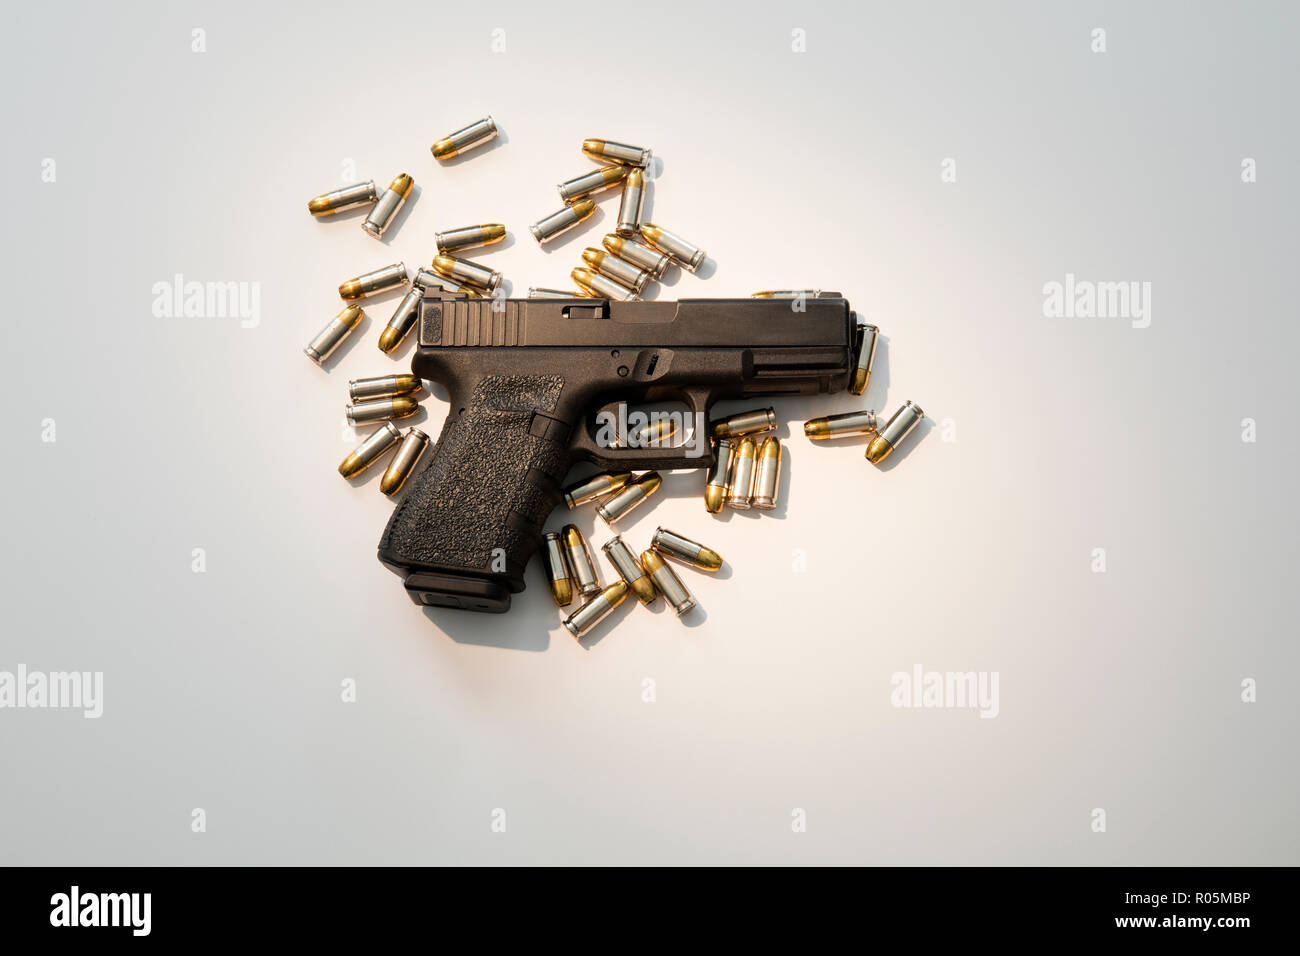 Semiautomatic Glock handgun Stock Photo